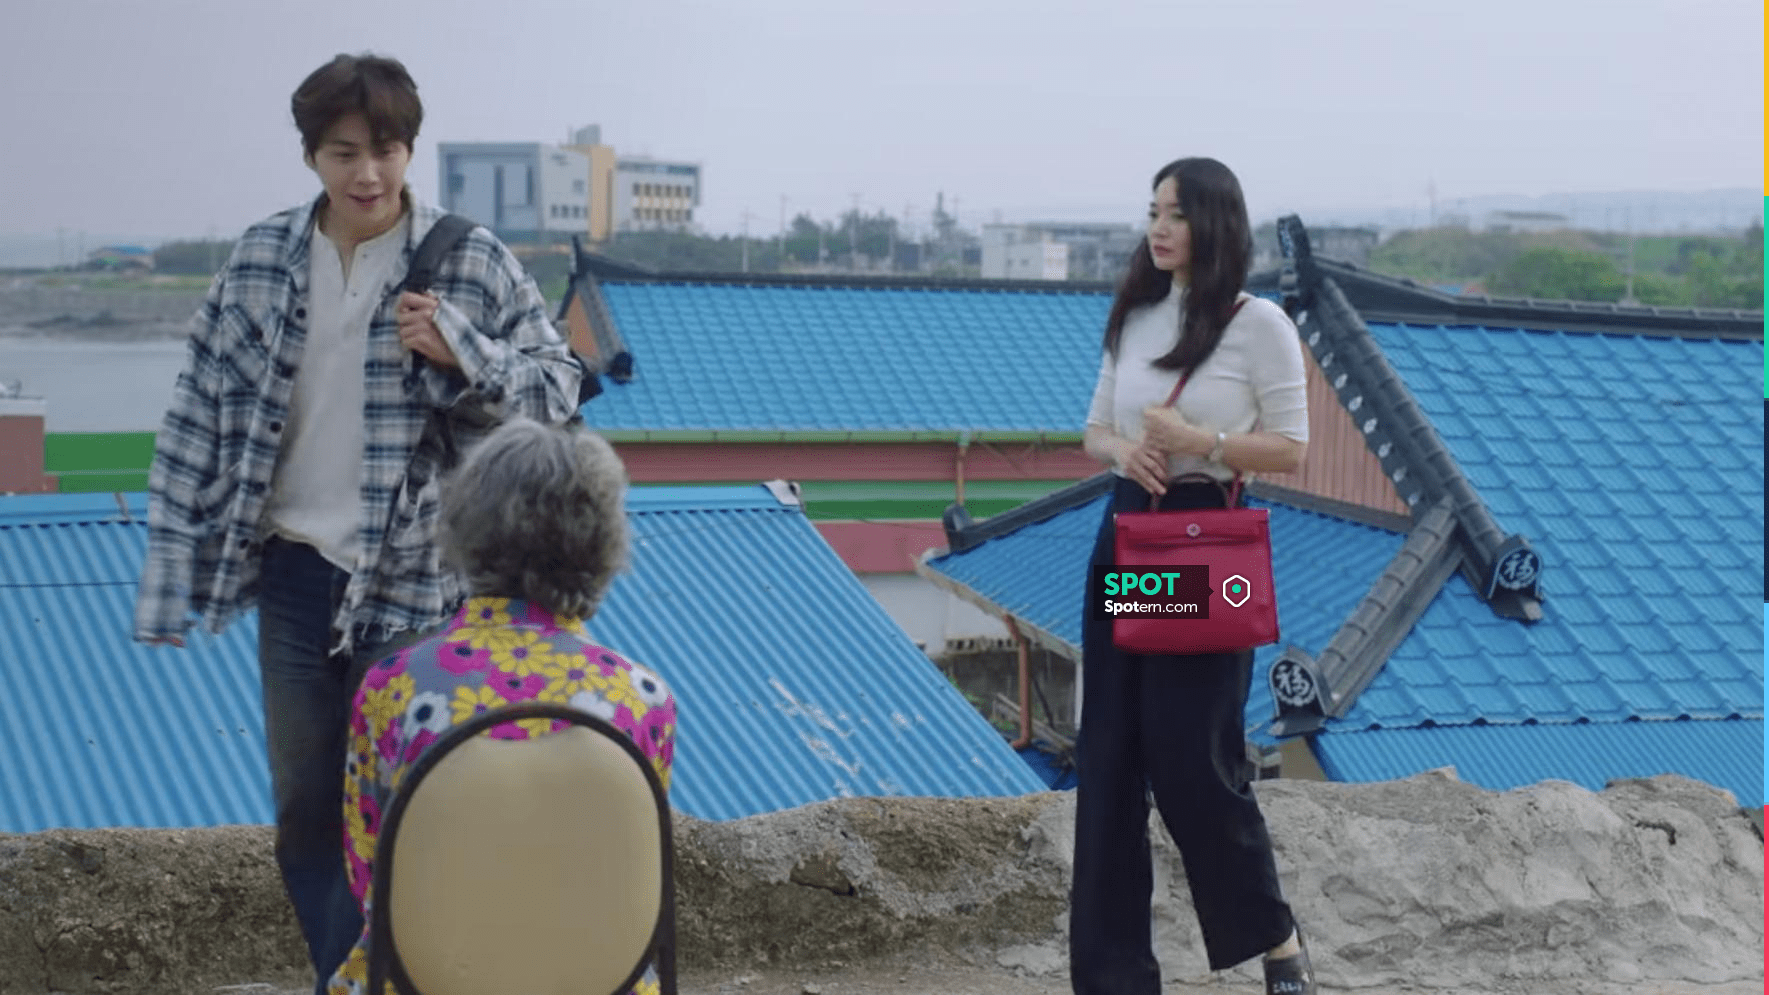 Herbag Zip 31 Retourne Verso Bag in red worn by Yoon Hye Jin (Shin Min-a)  as seen in Hometown Cha-Cha-Cha (S01E02)